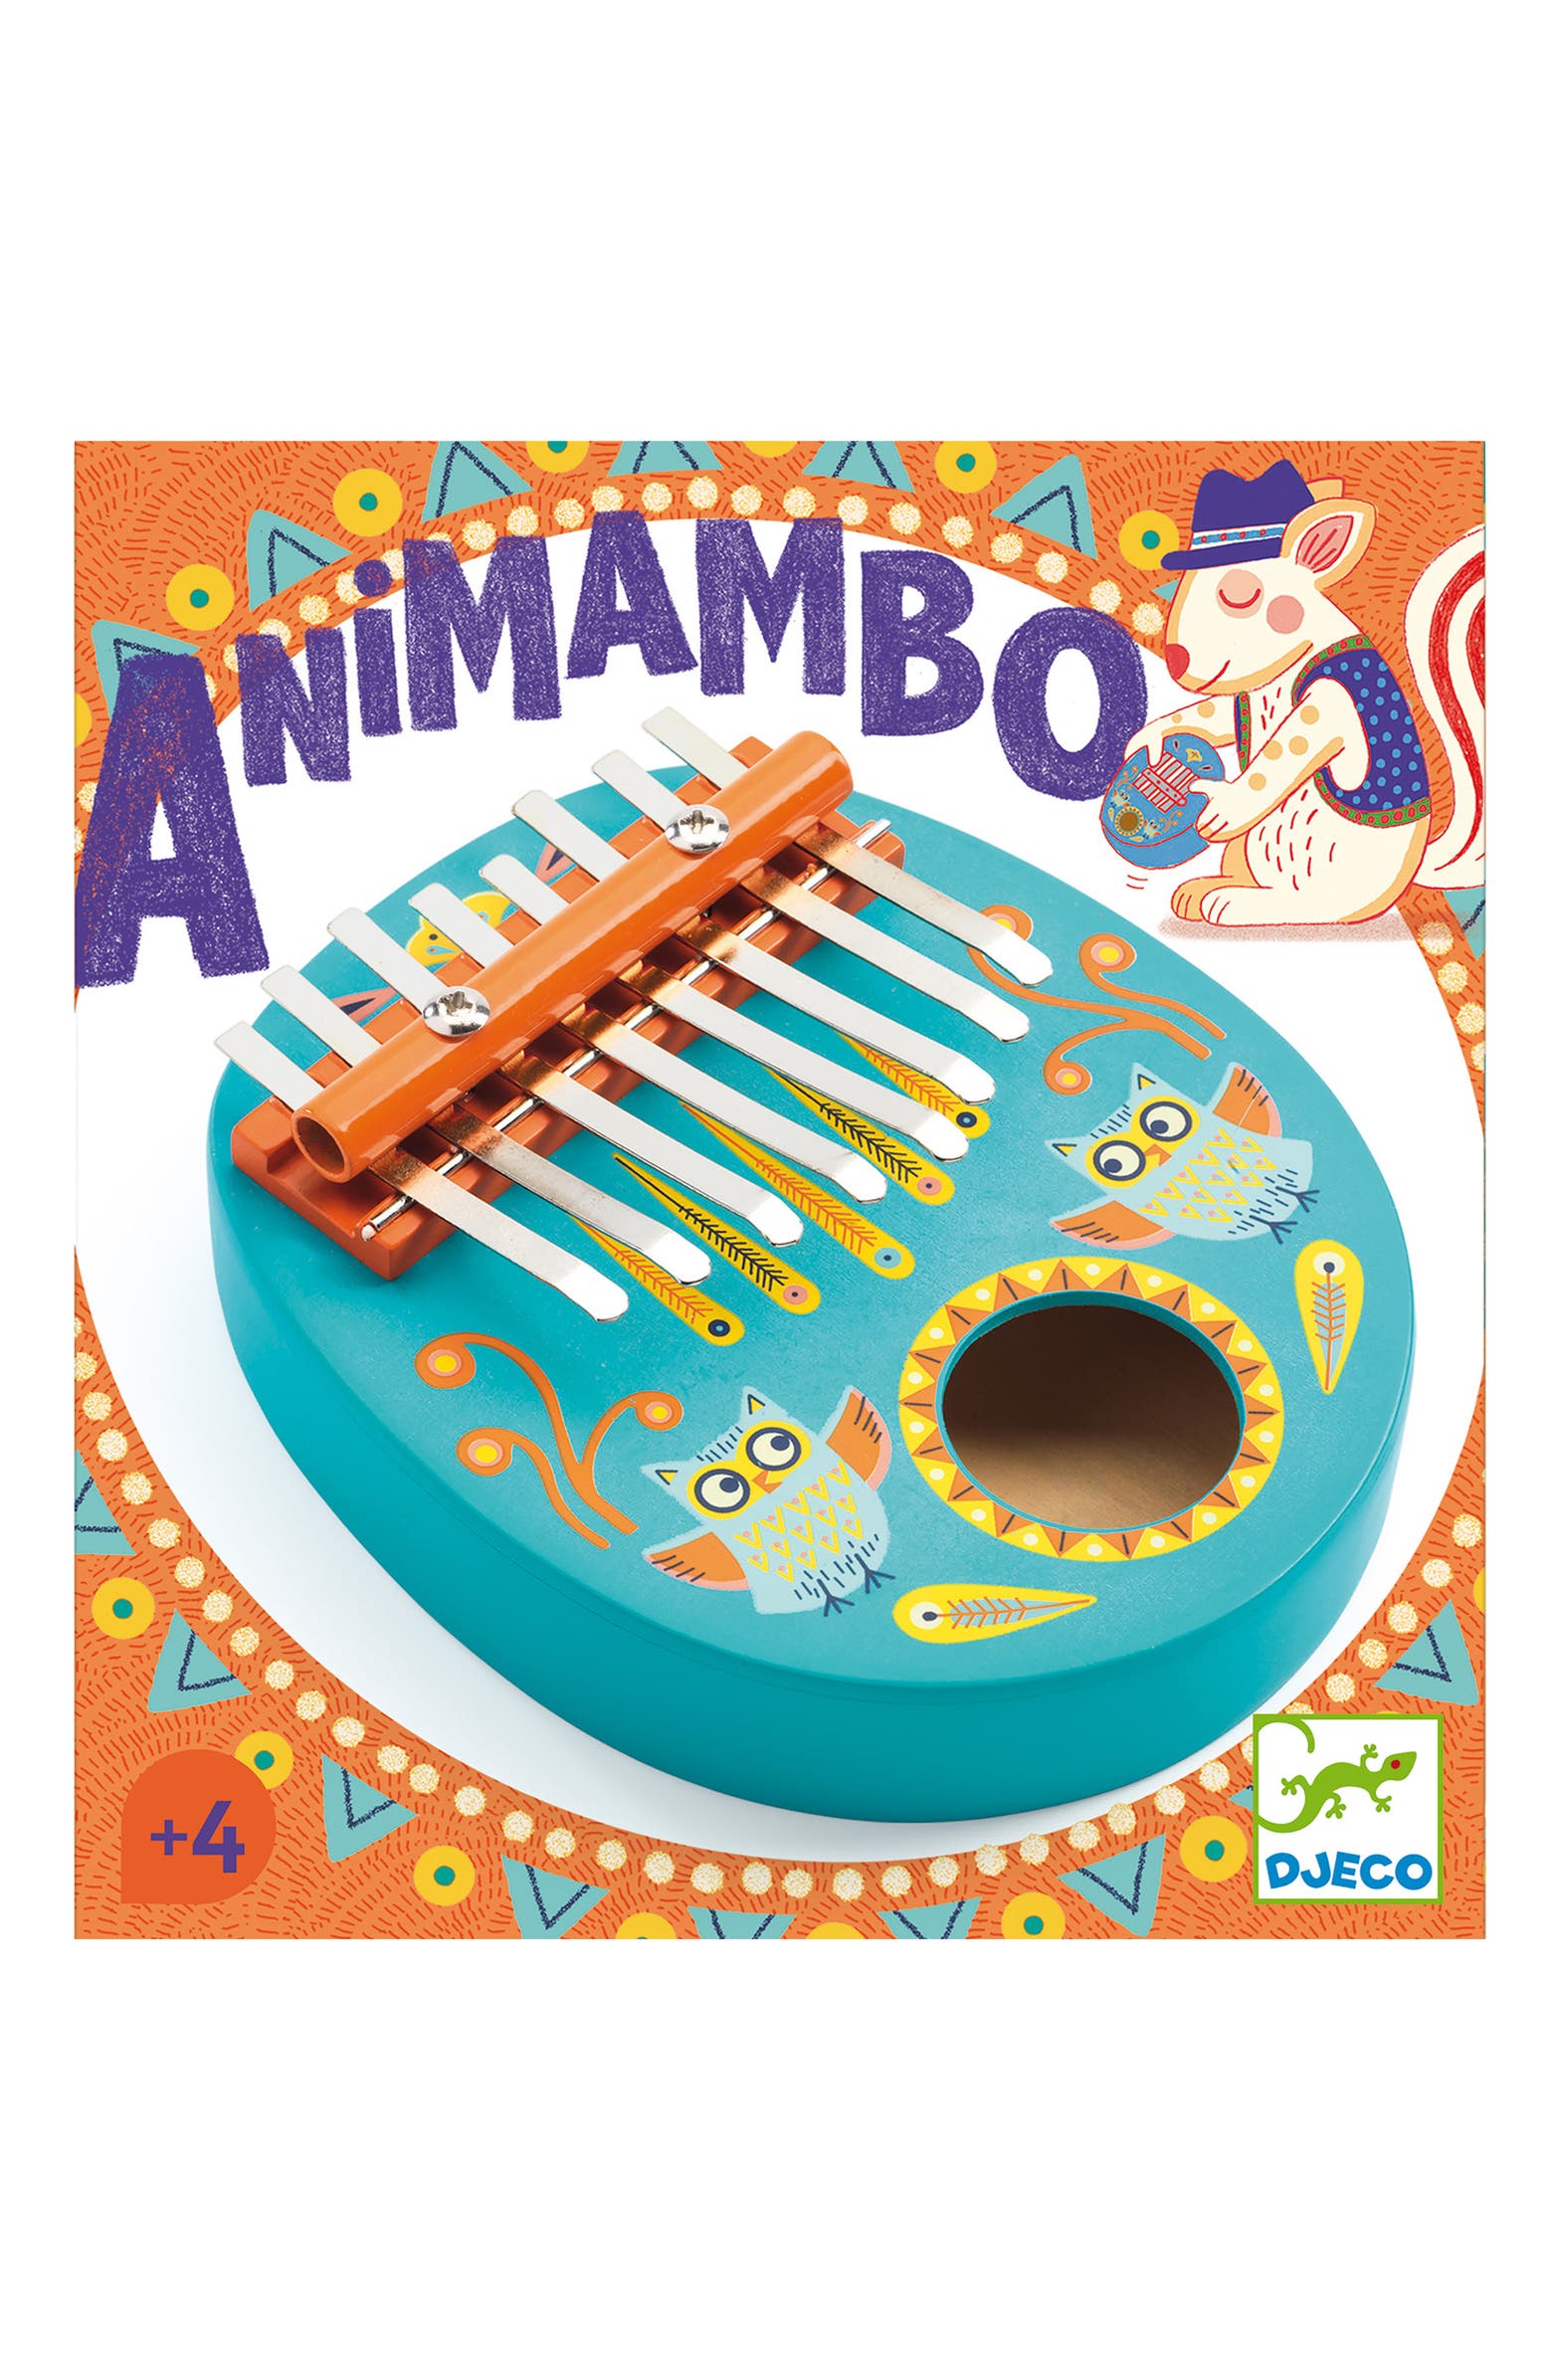 Harmonica Animambo - Djeco